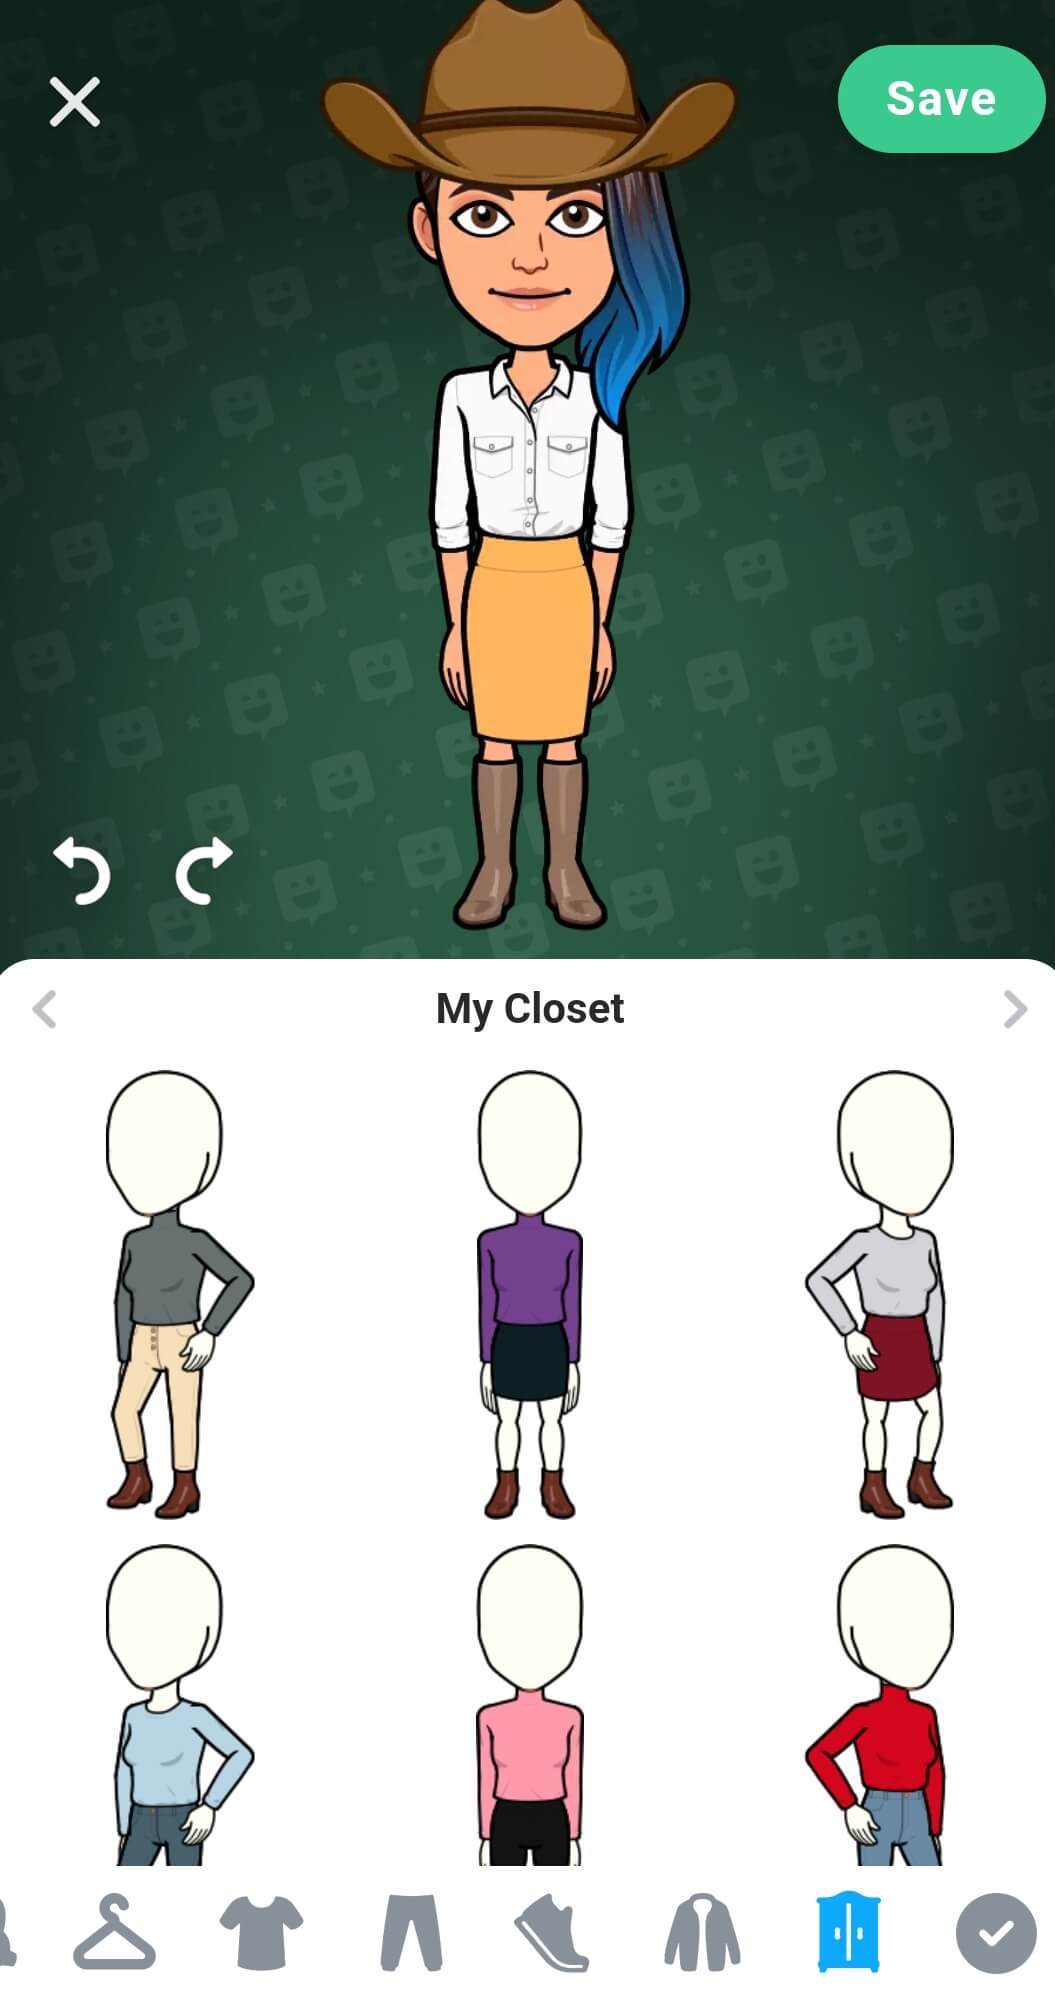 En el ropero del avatar, en la mitad inferior de la pantalla, se guardó una variedad de atuendos. El botón para guardar está en la esquina superior derecha.